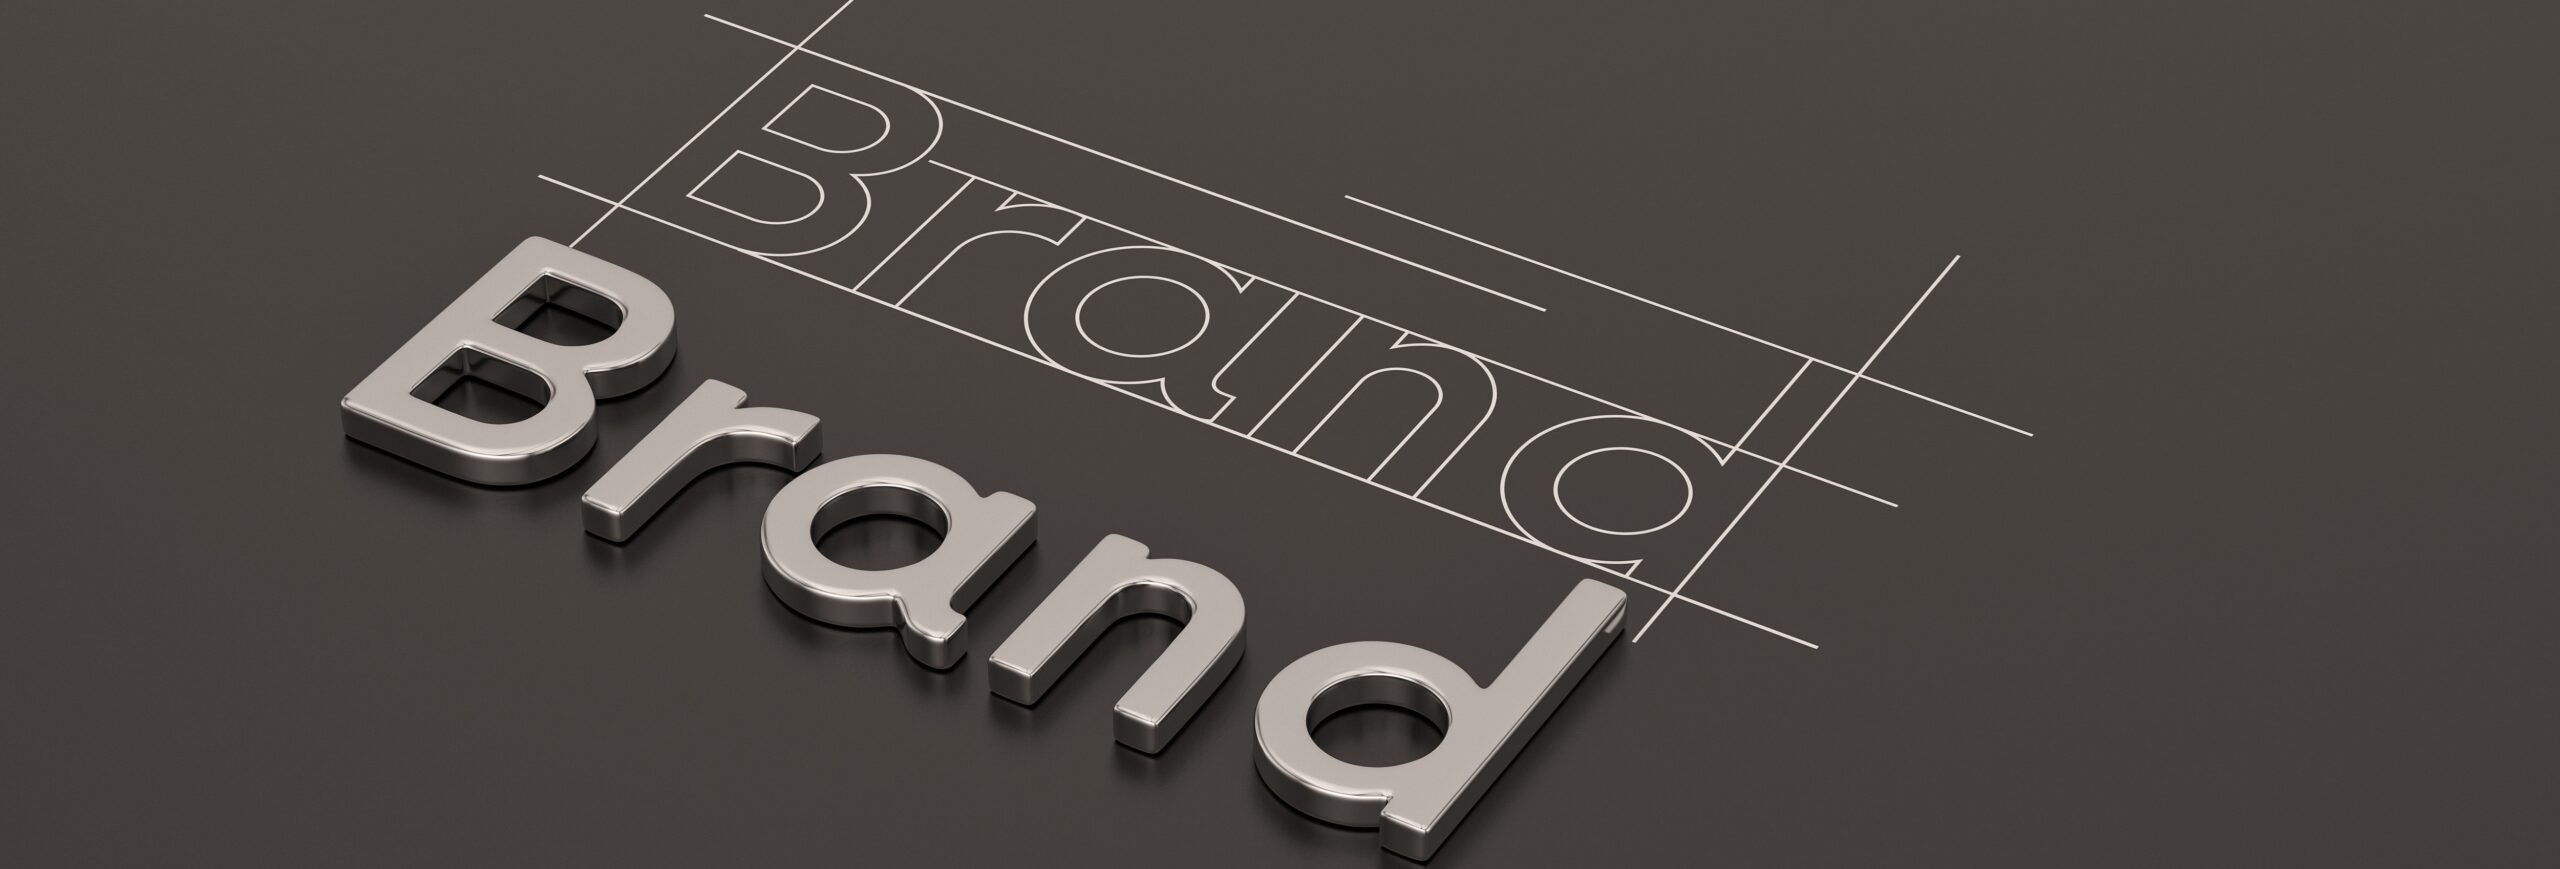 Steel word brand on black background brand concept design 3D illustration.